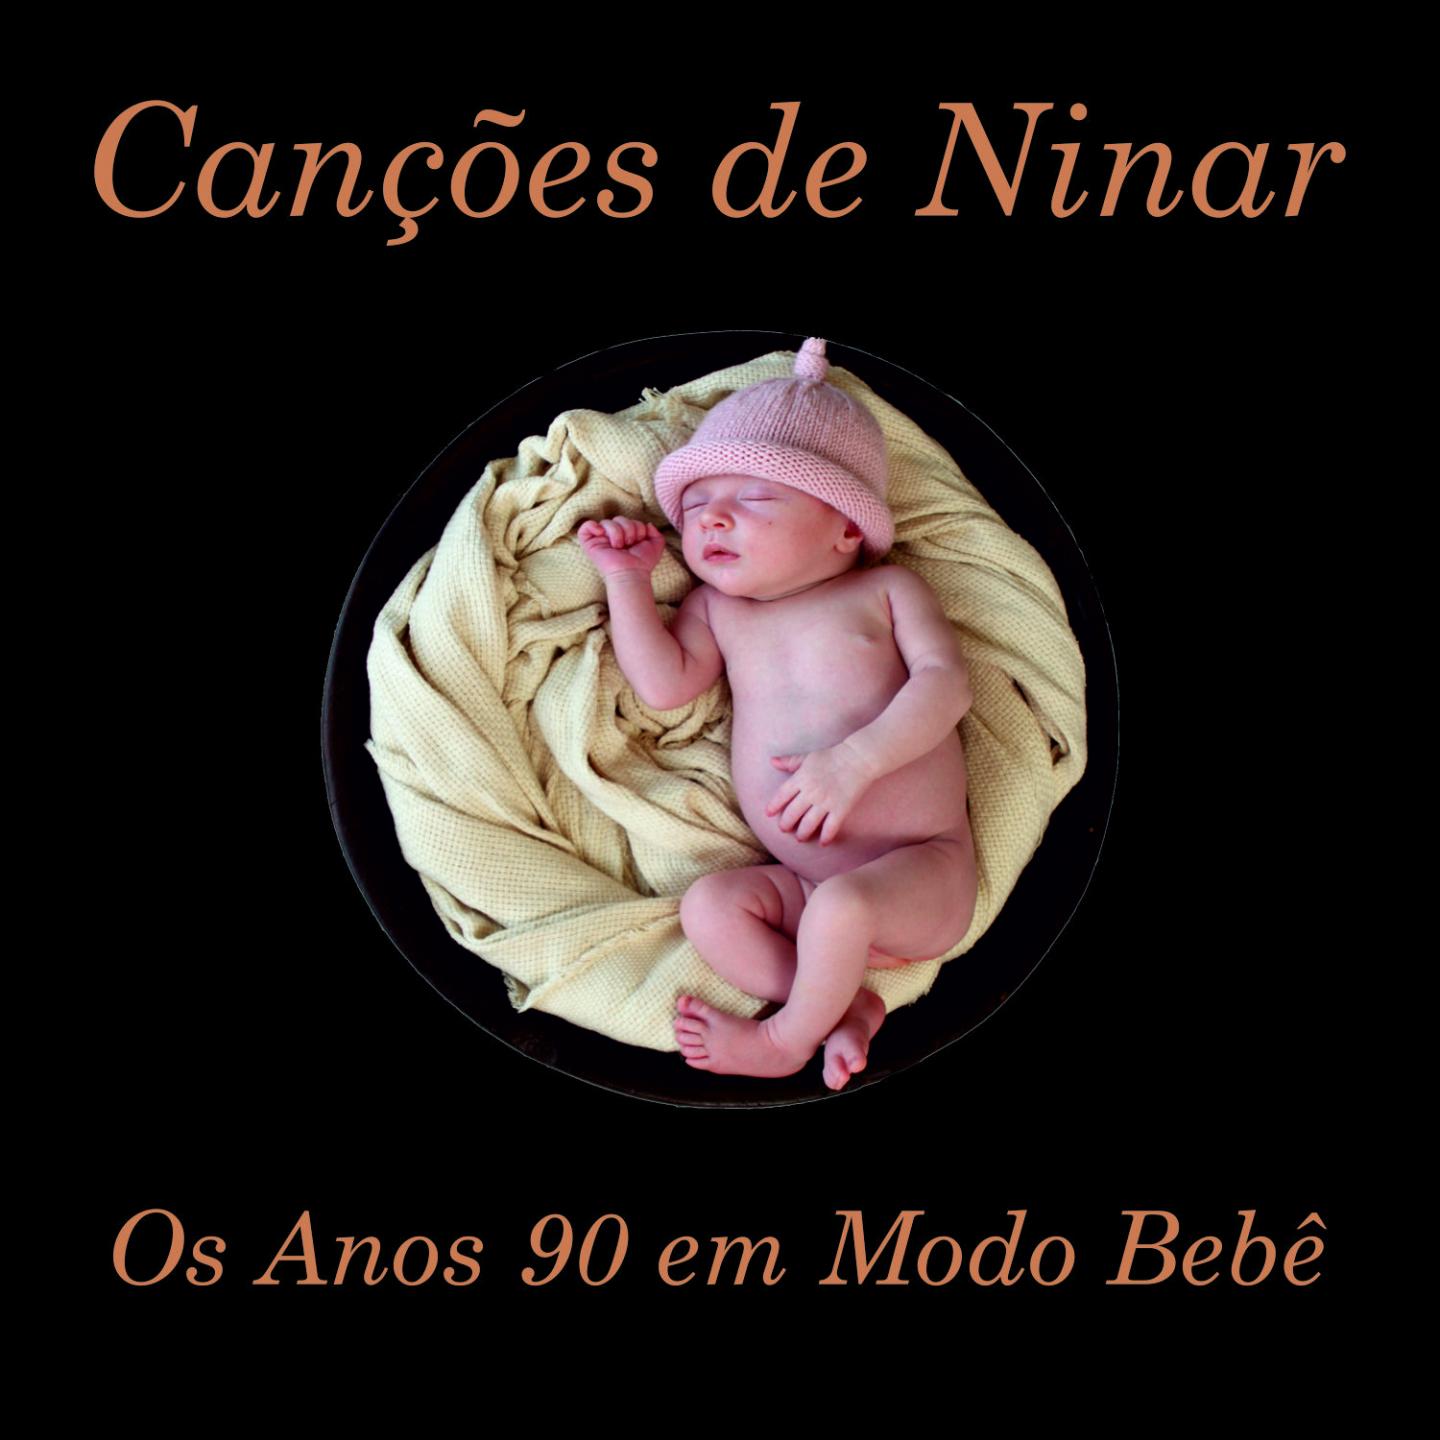 Can es de Ninar: Os Anos 90 em Modo Beb